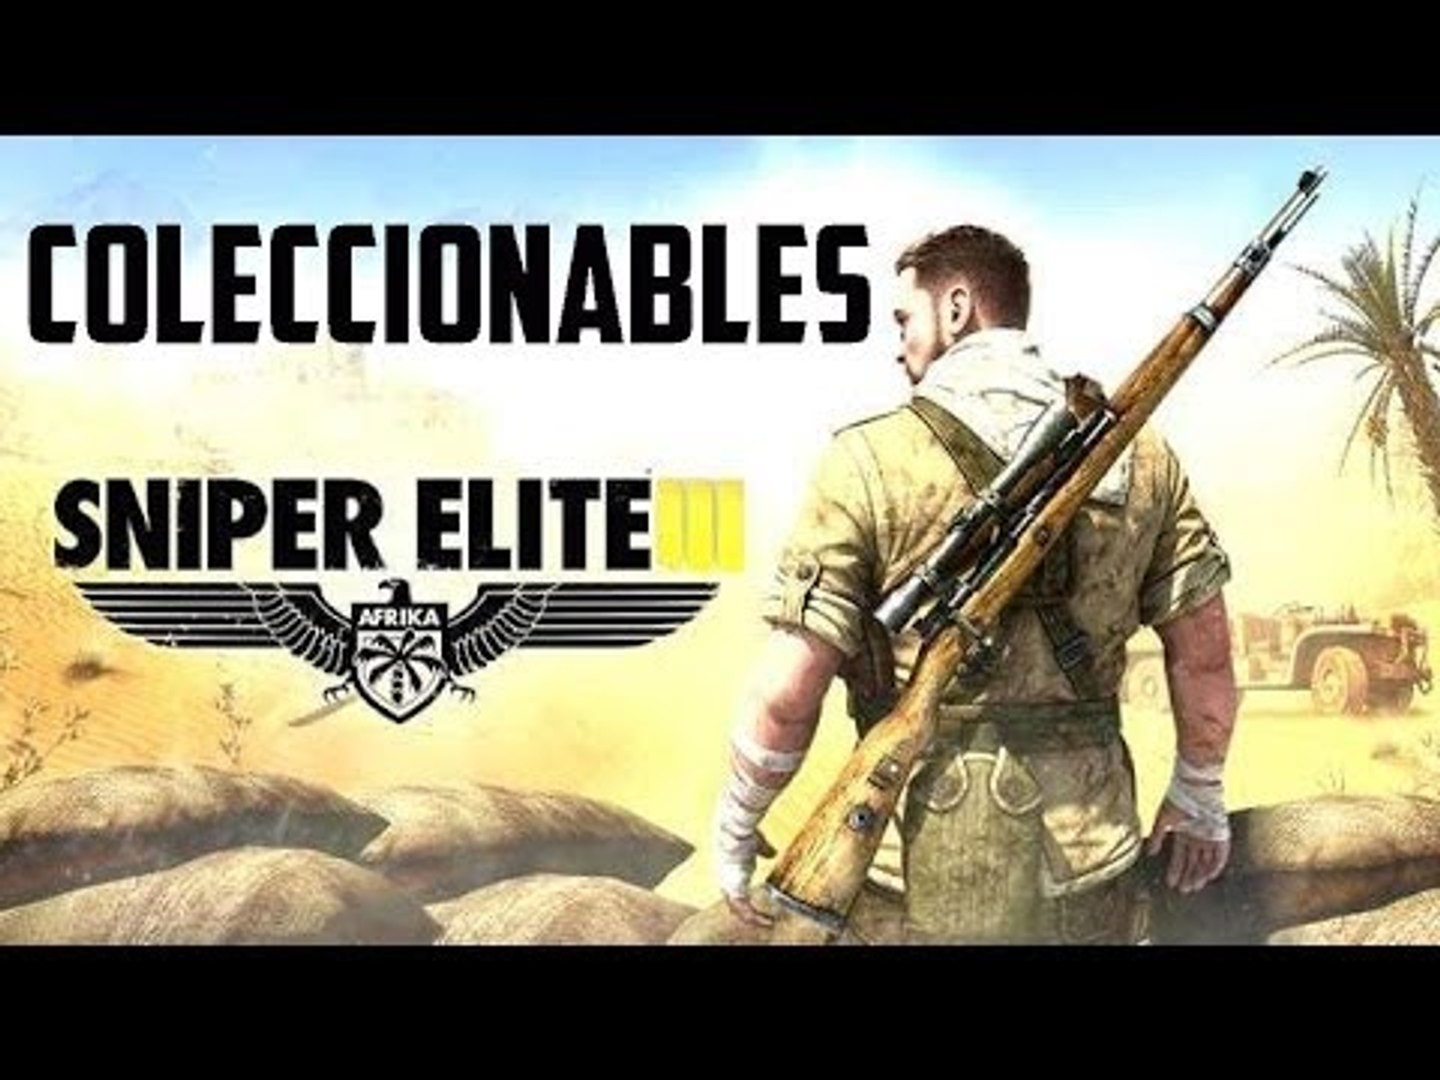 Coleccionables completos Sniper Elite 3 todos los coleccionables,  ,localizaciones y objetos de SN 3 - Vídeo Dailymotion